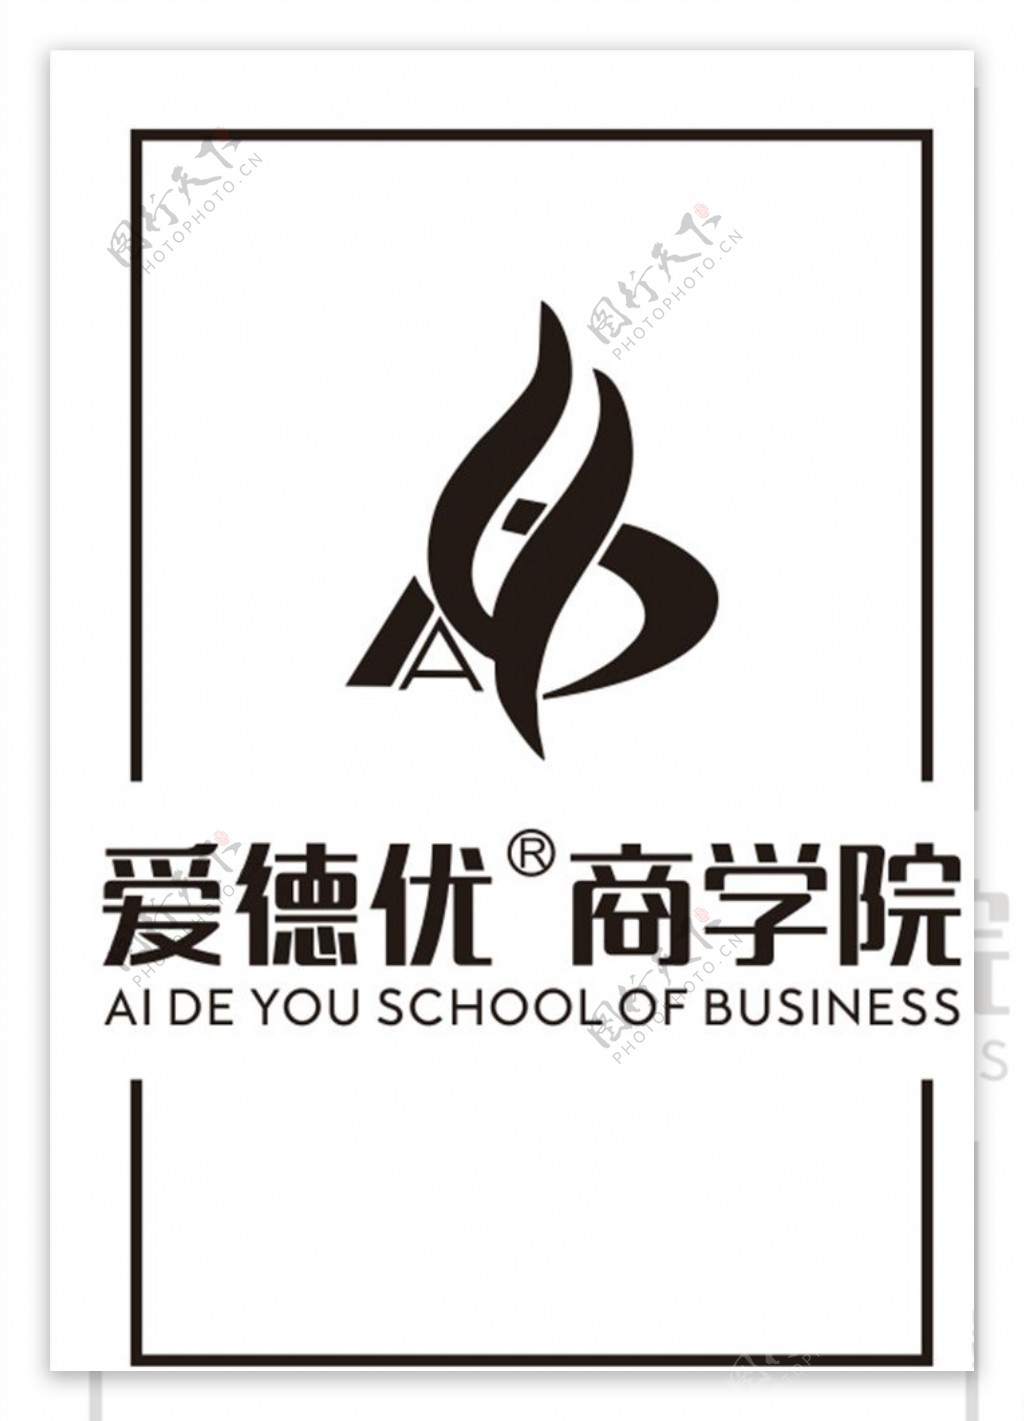 爱德优商学院logo图片